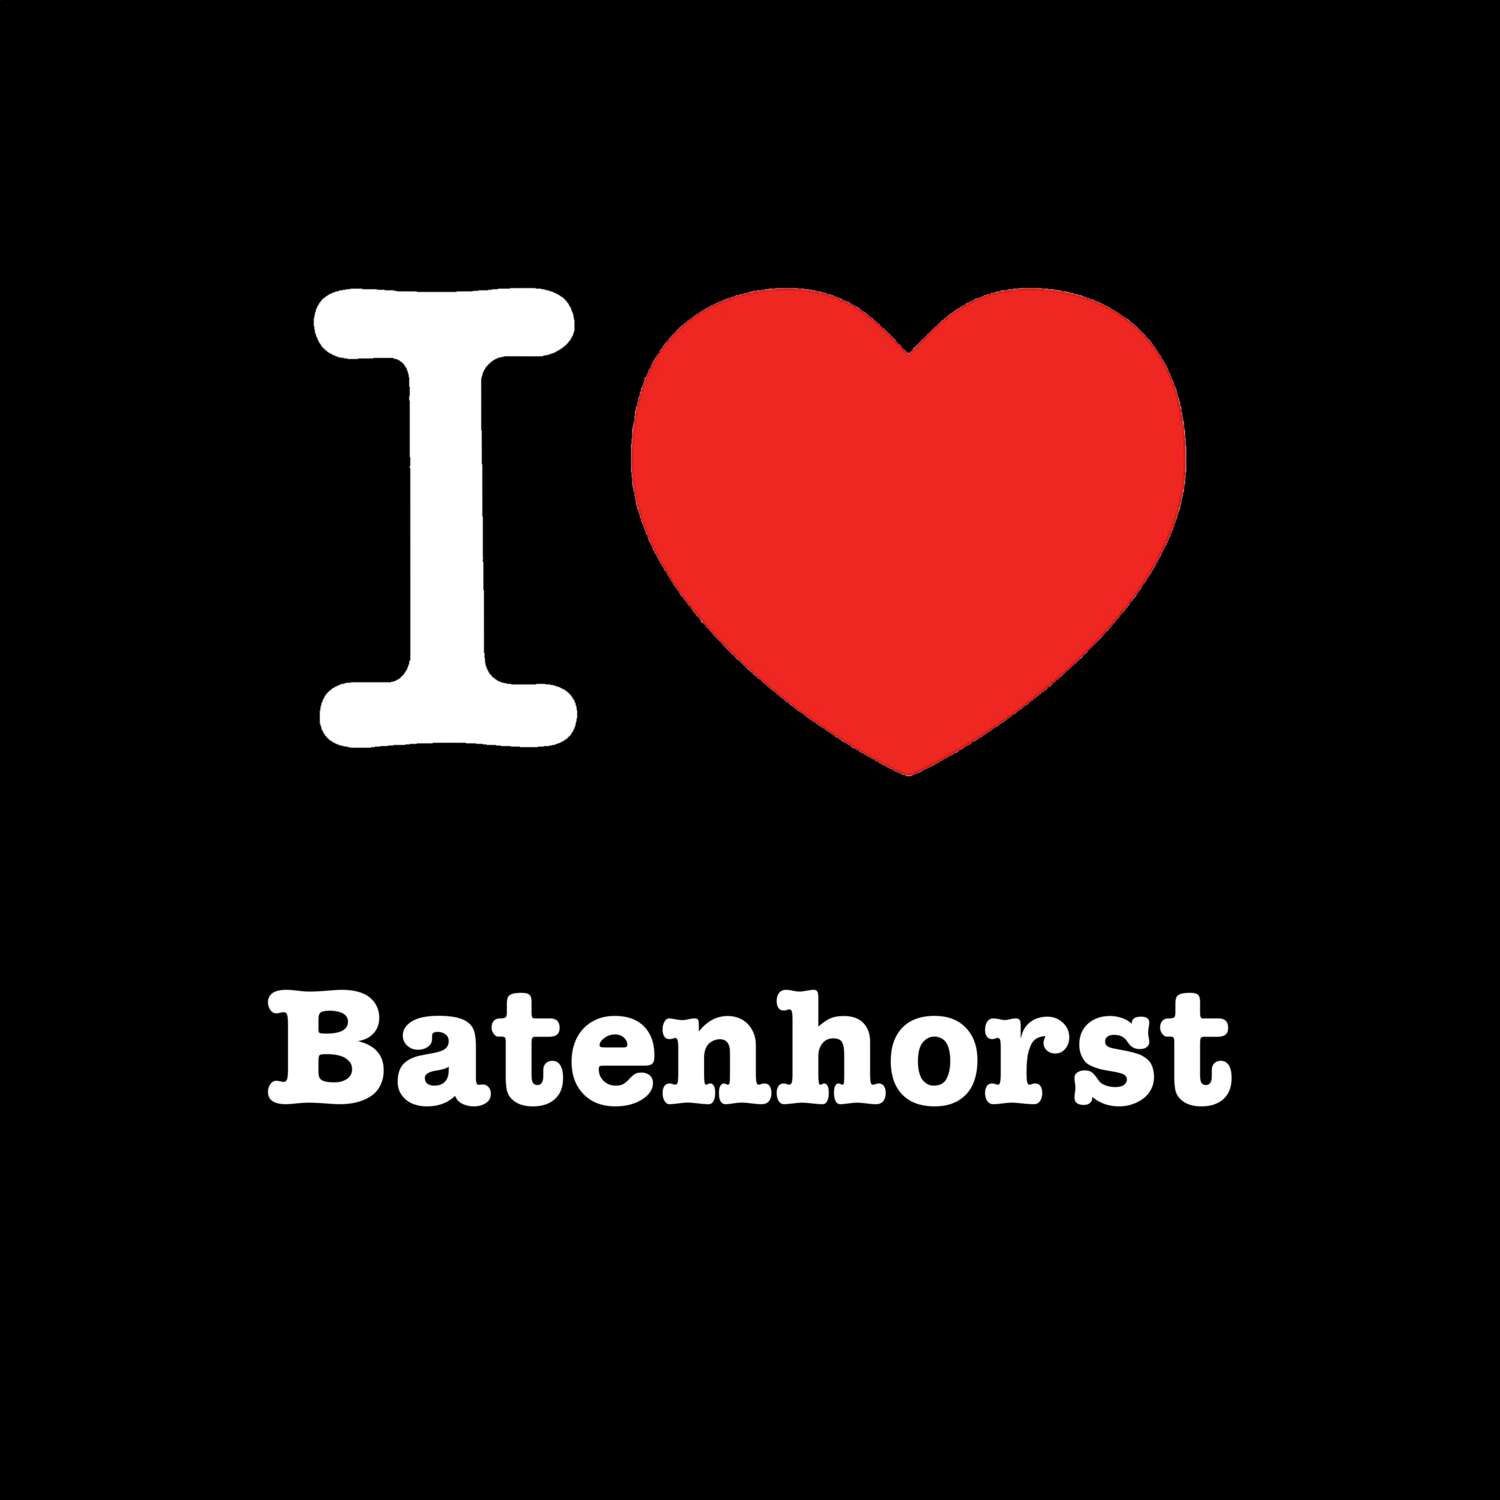 Batenhorst T-Shirt »I love«